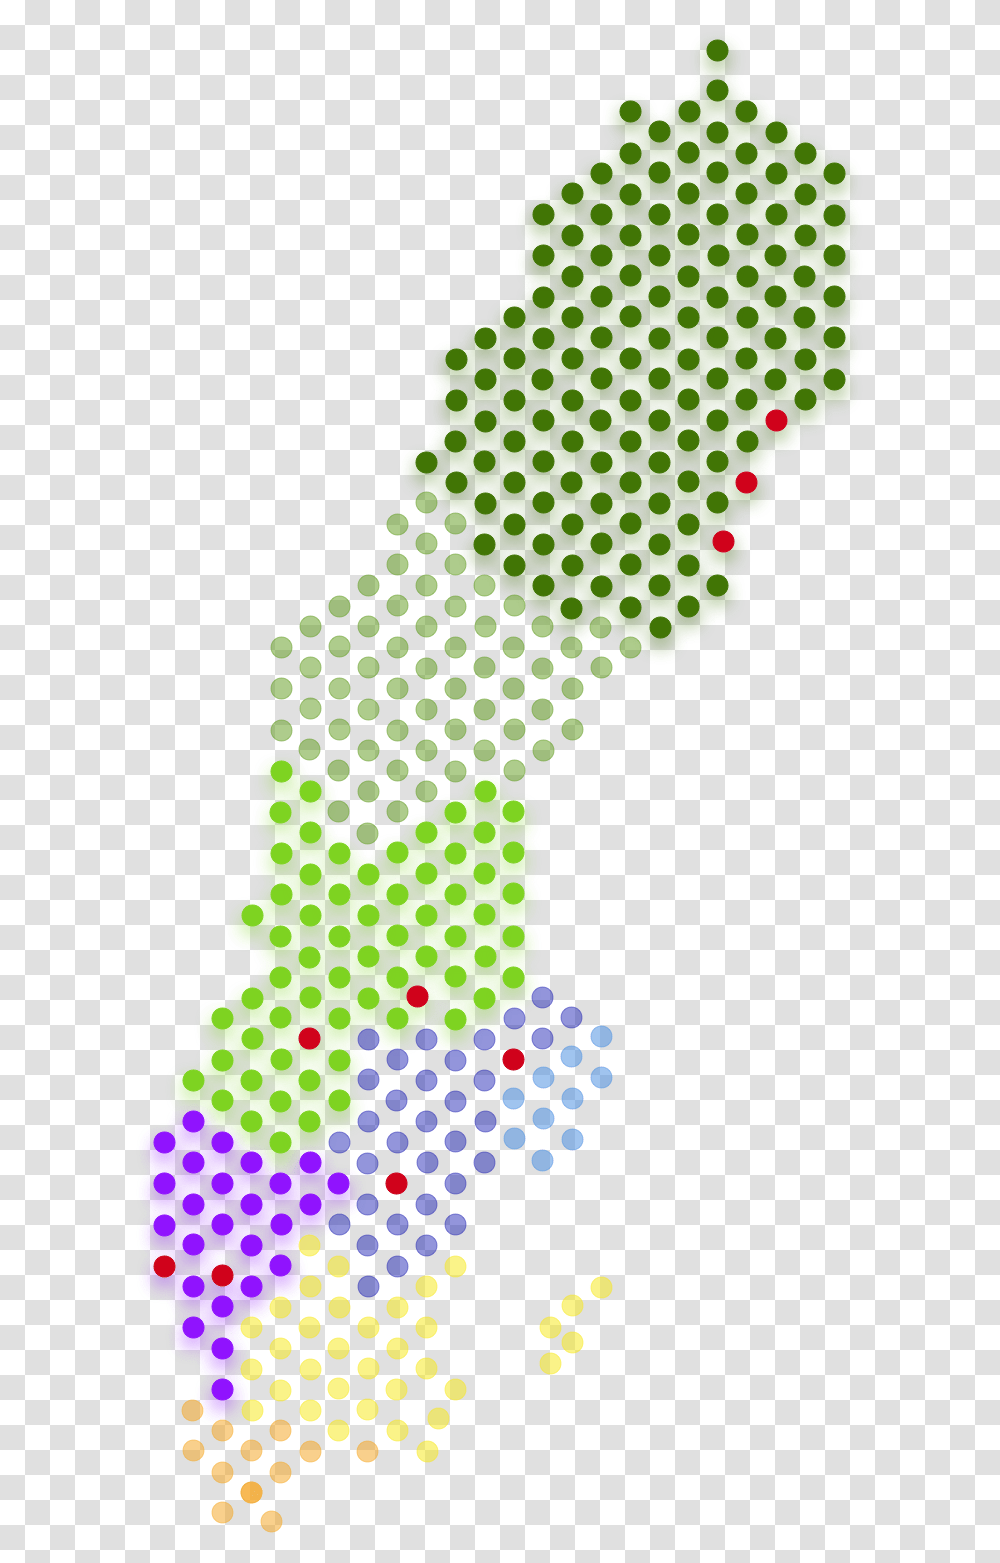 Sverige Stder Jan 2019 Sweden Pixel Map, Plant, Green Transparent Png